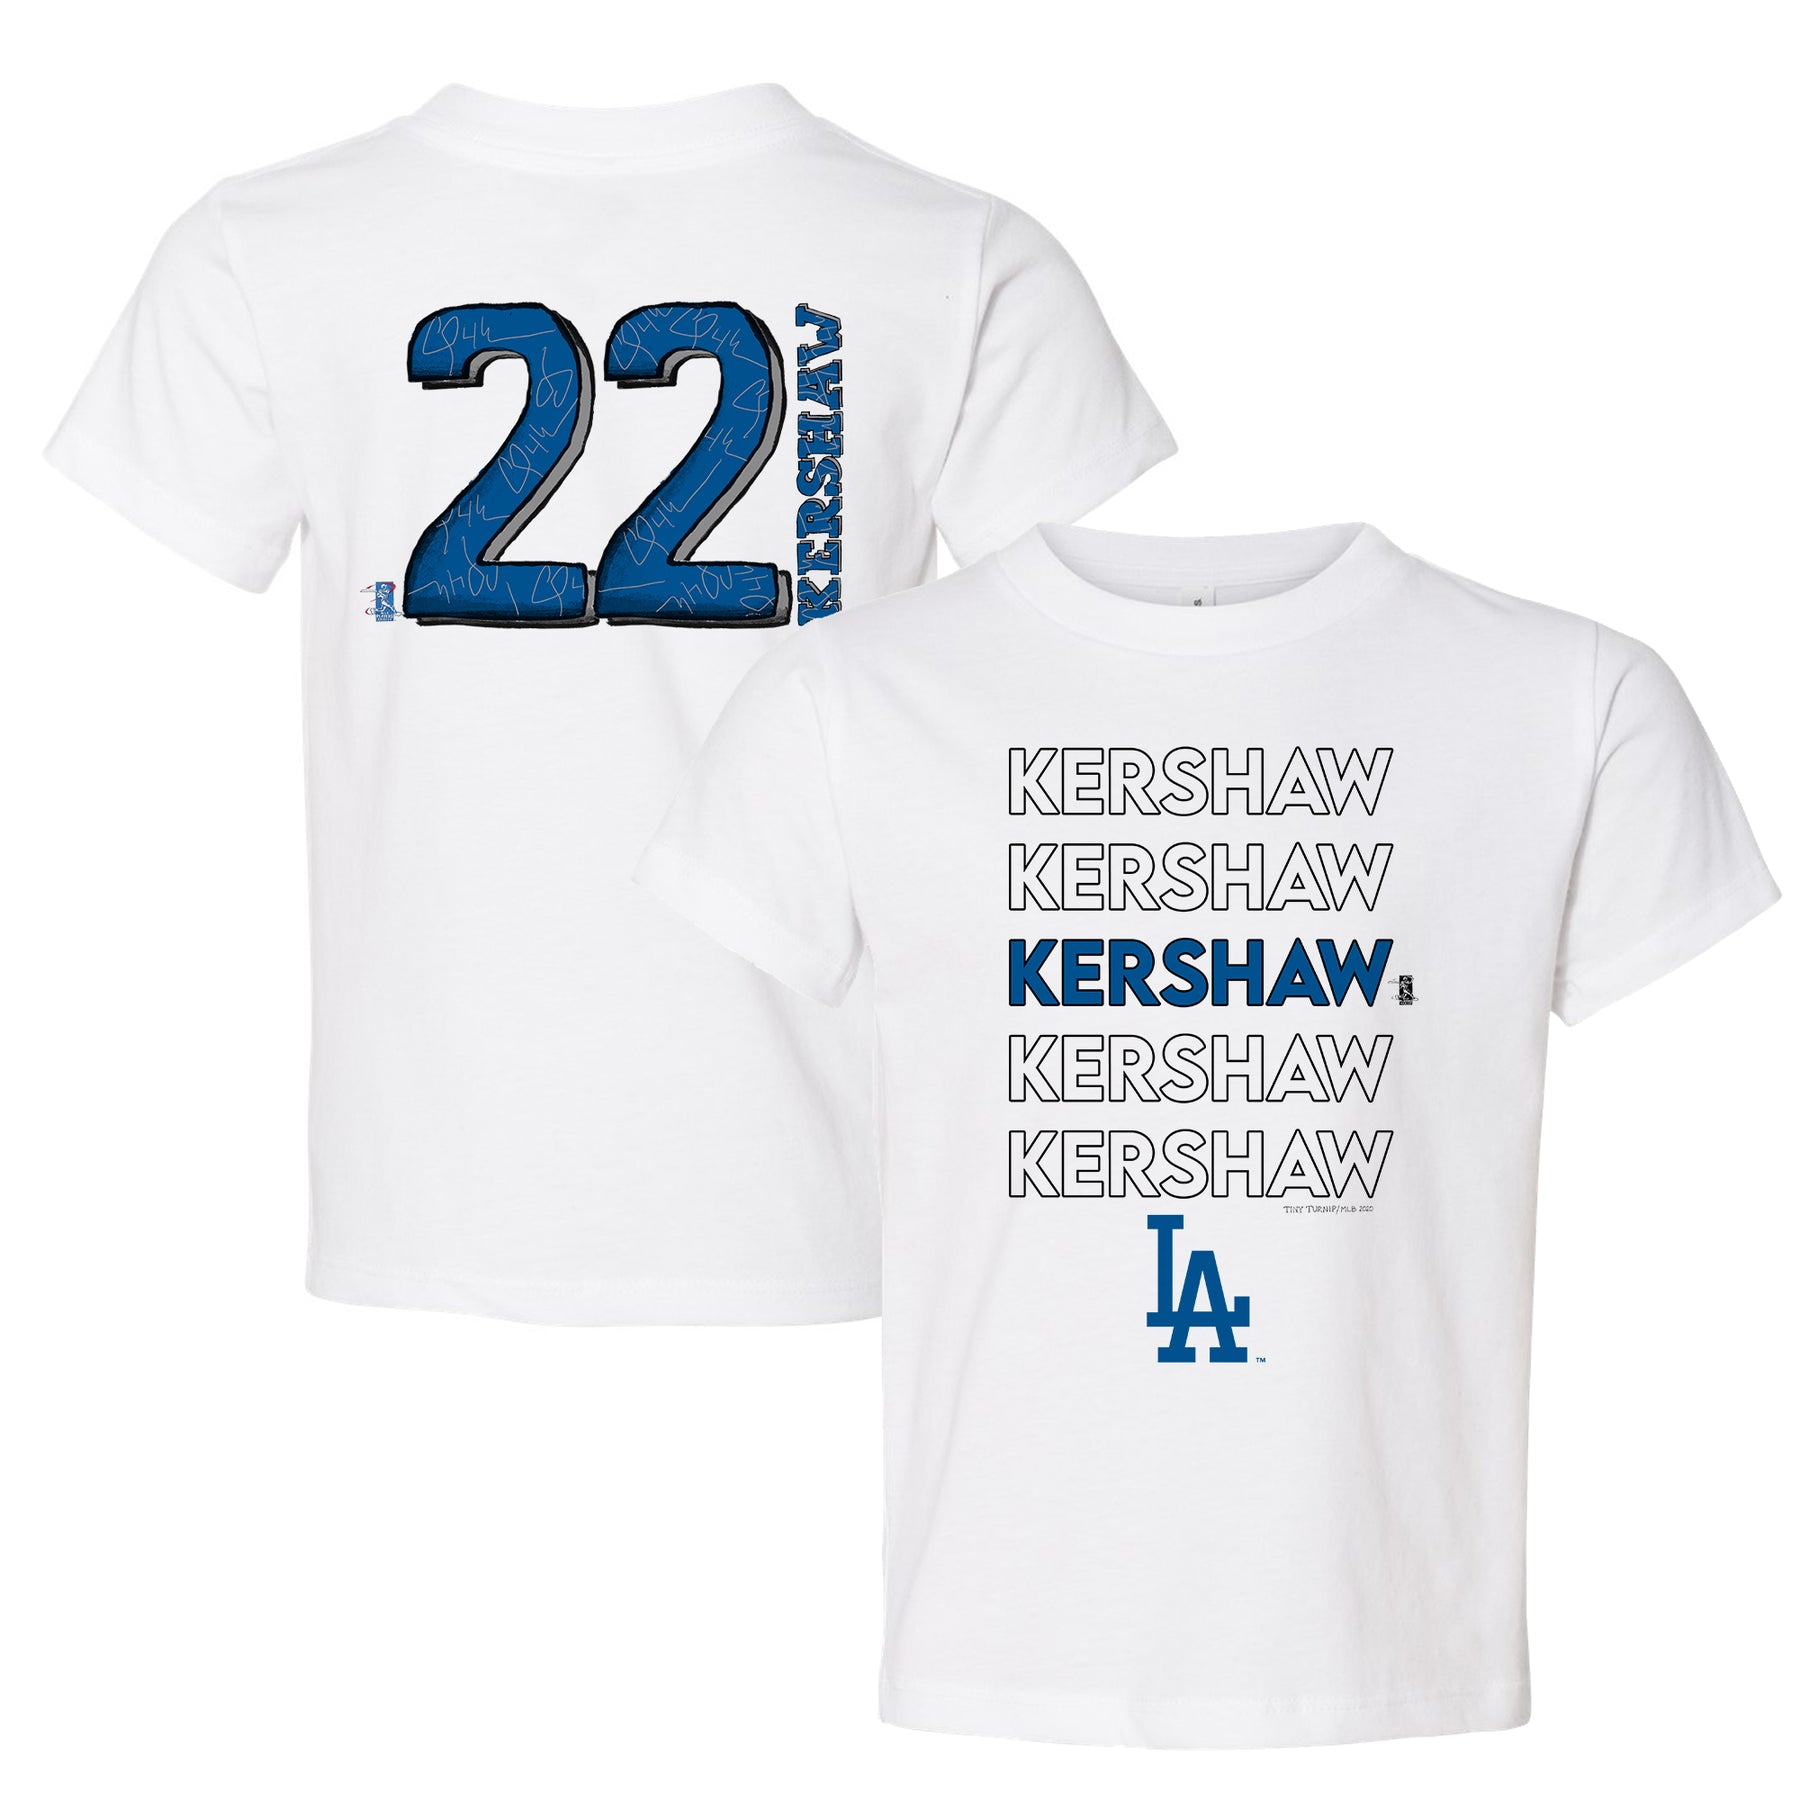 Clayton Kershaw T-shirt